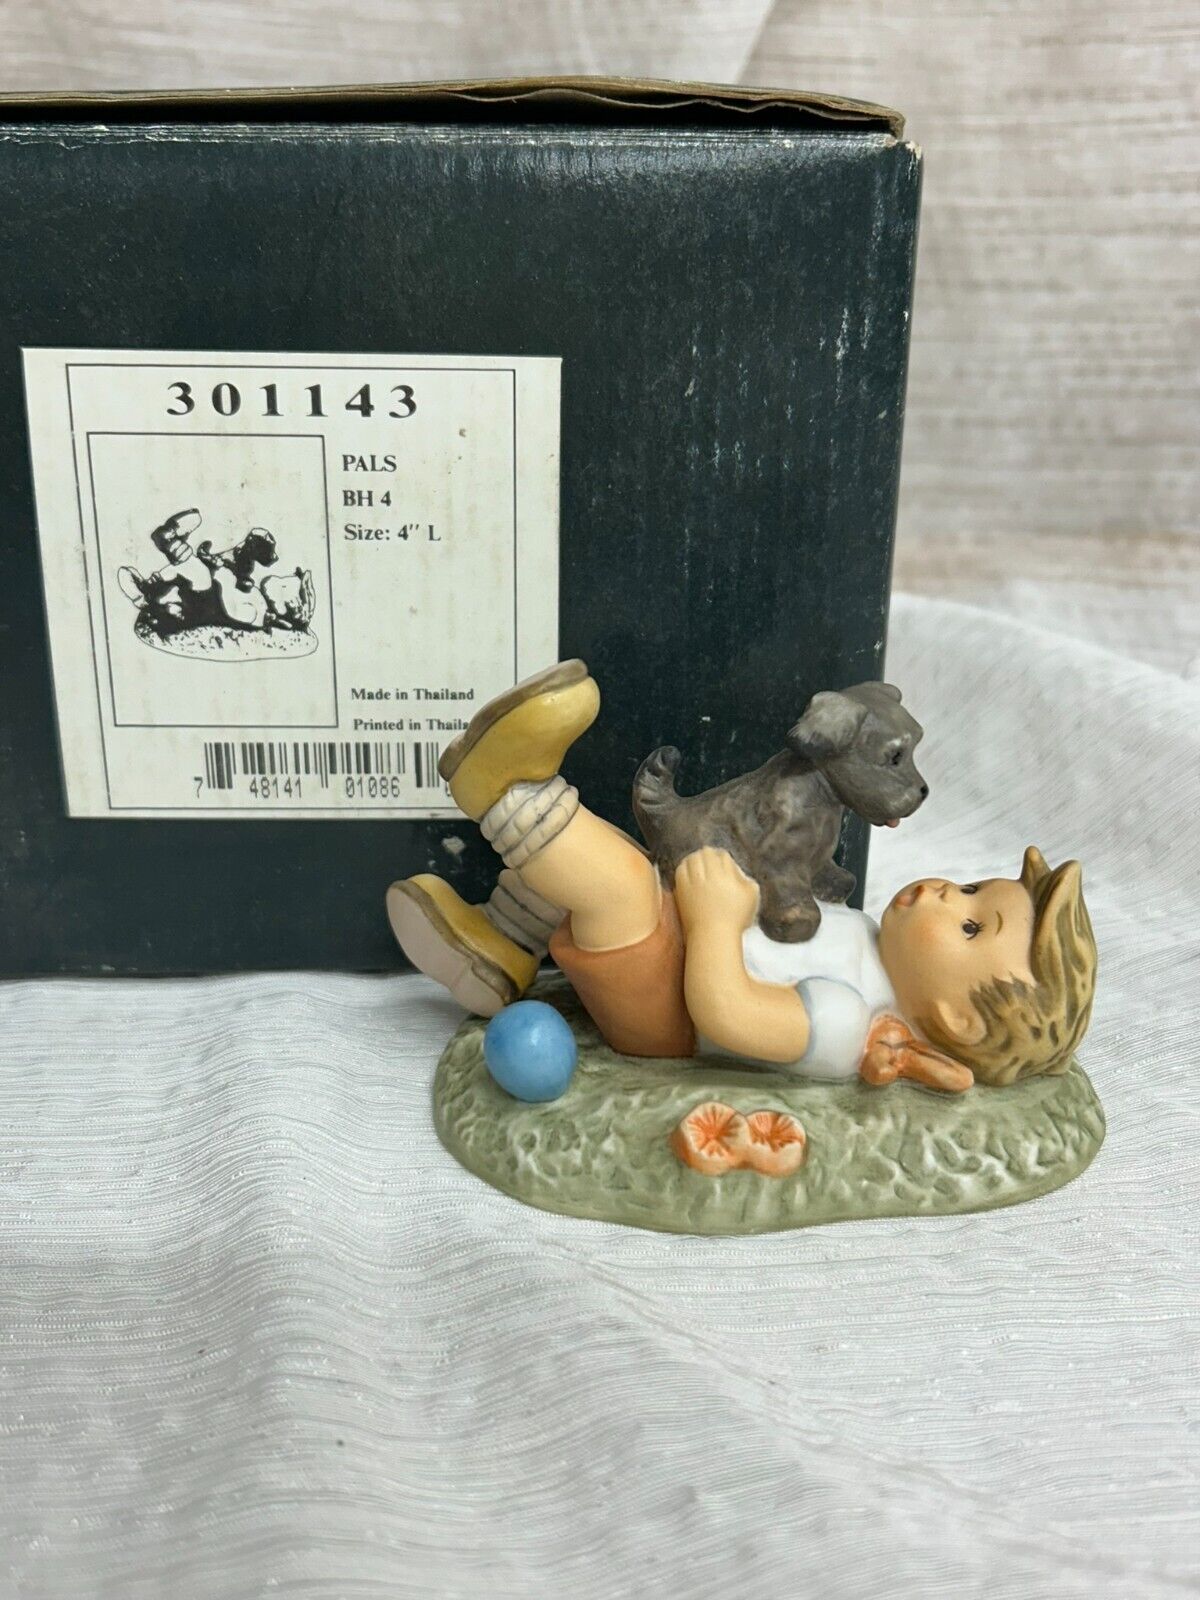 GOEBEL BERTA HUMMEL Vintage Figurine “Pals” BH4 Boy with Puppy 1996